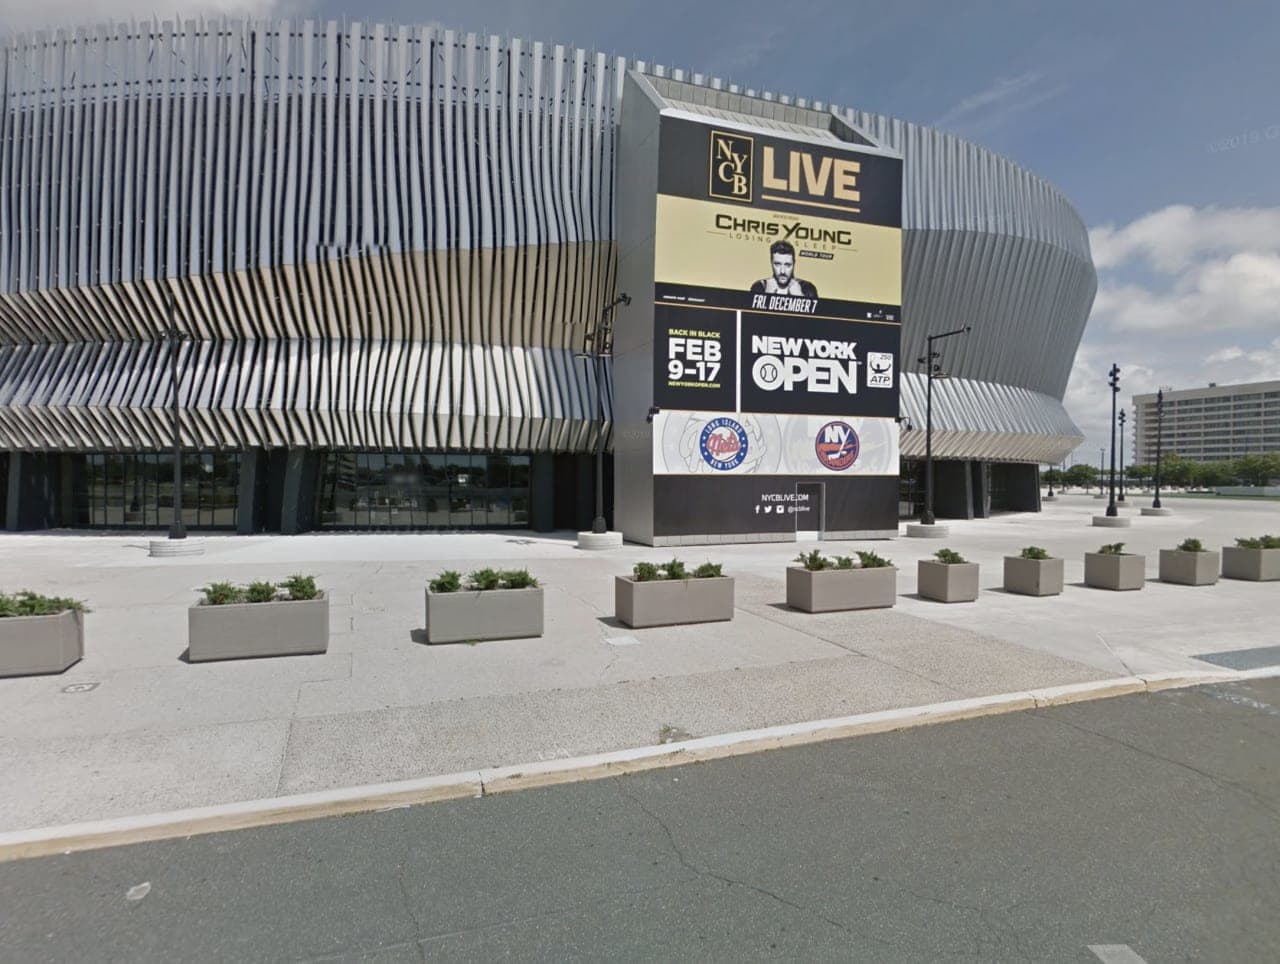 Nassau Coliseum.